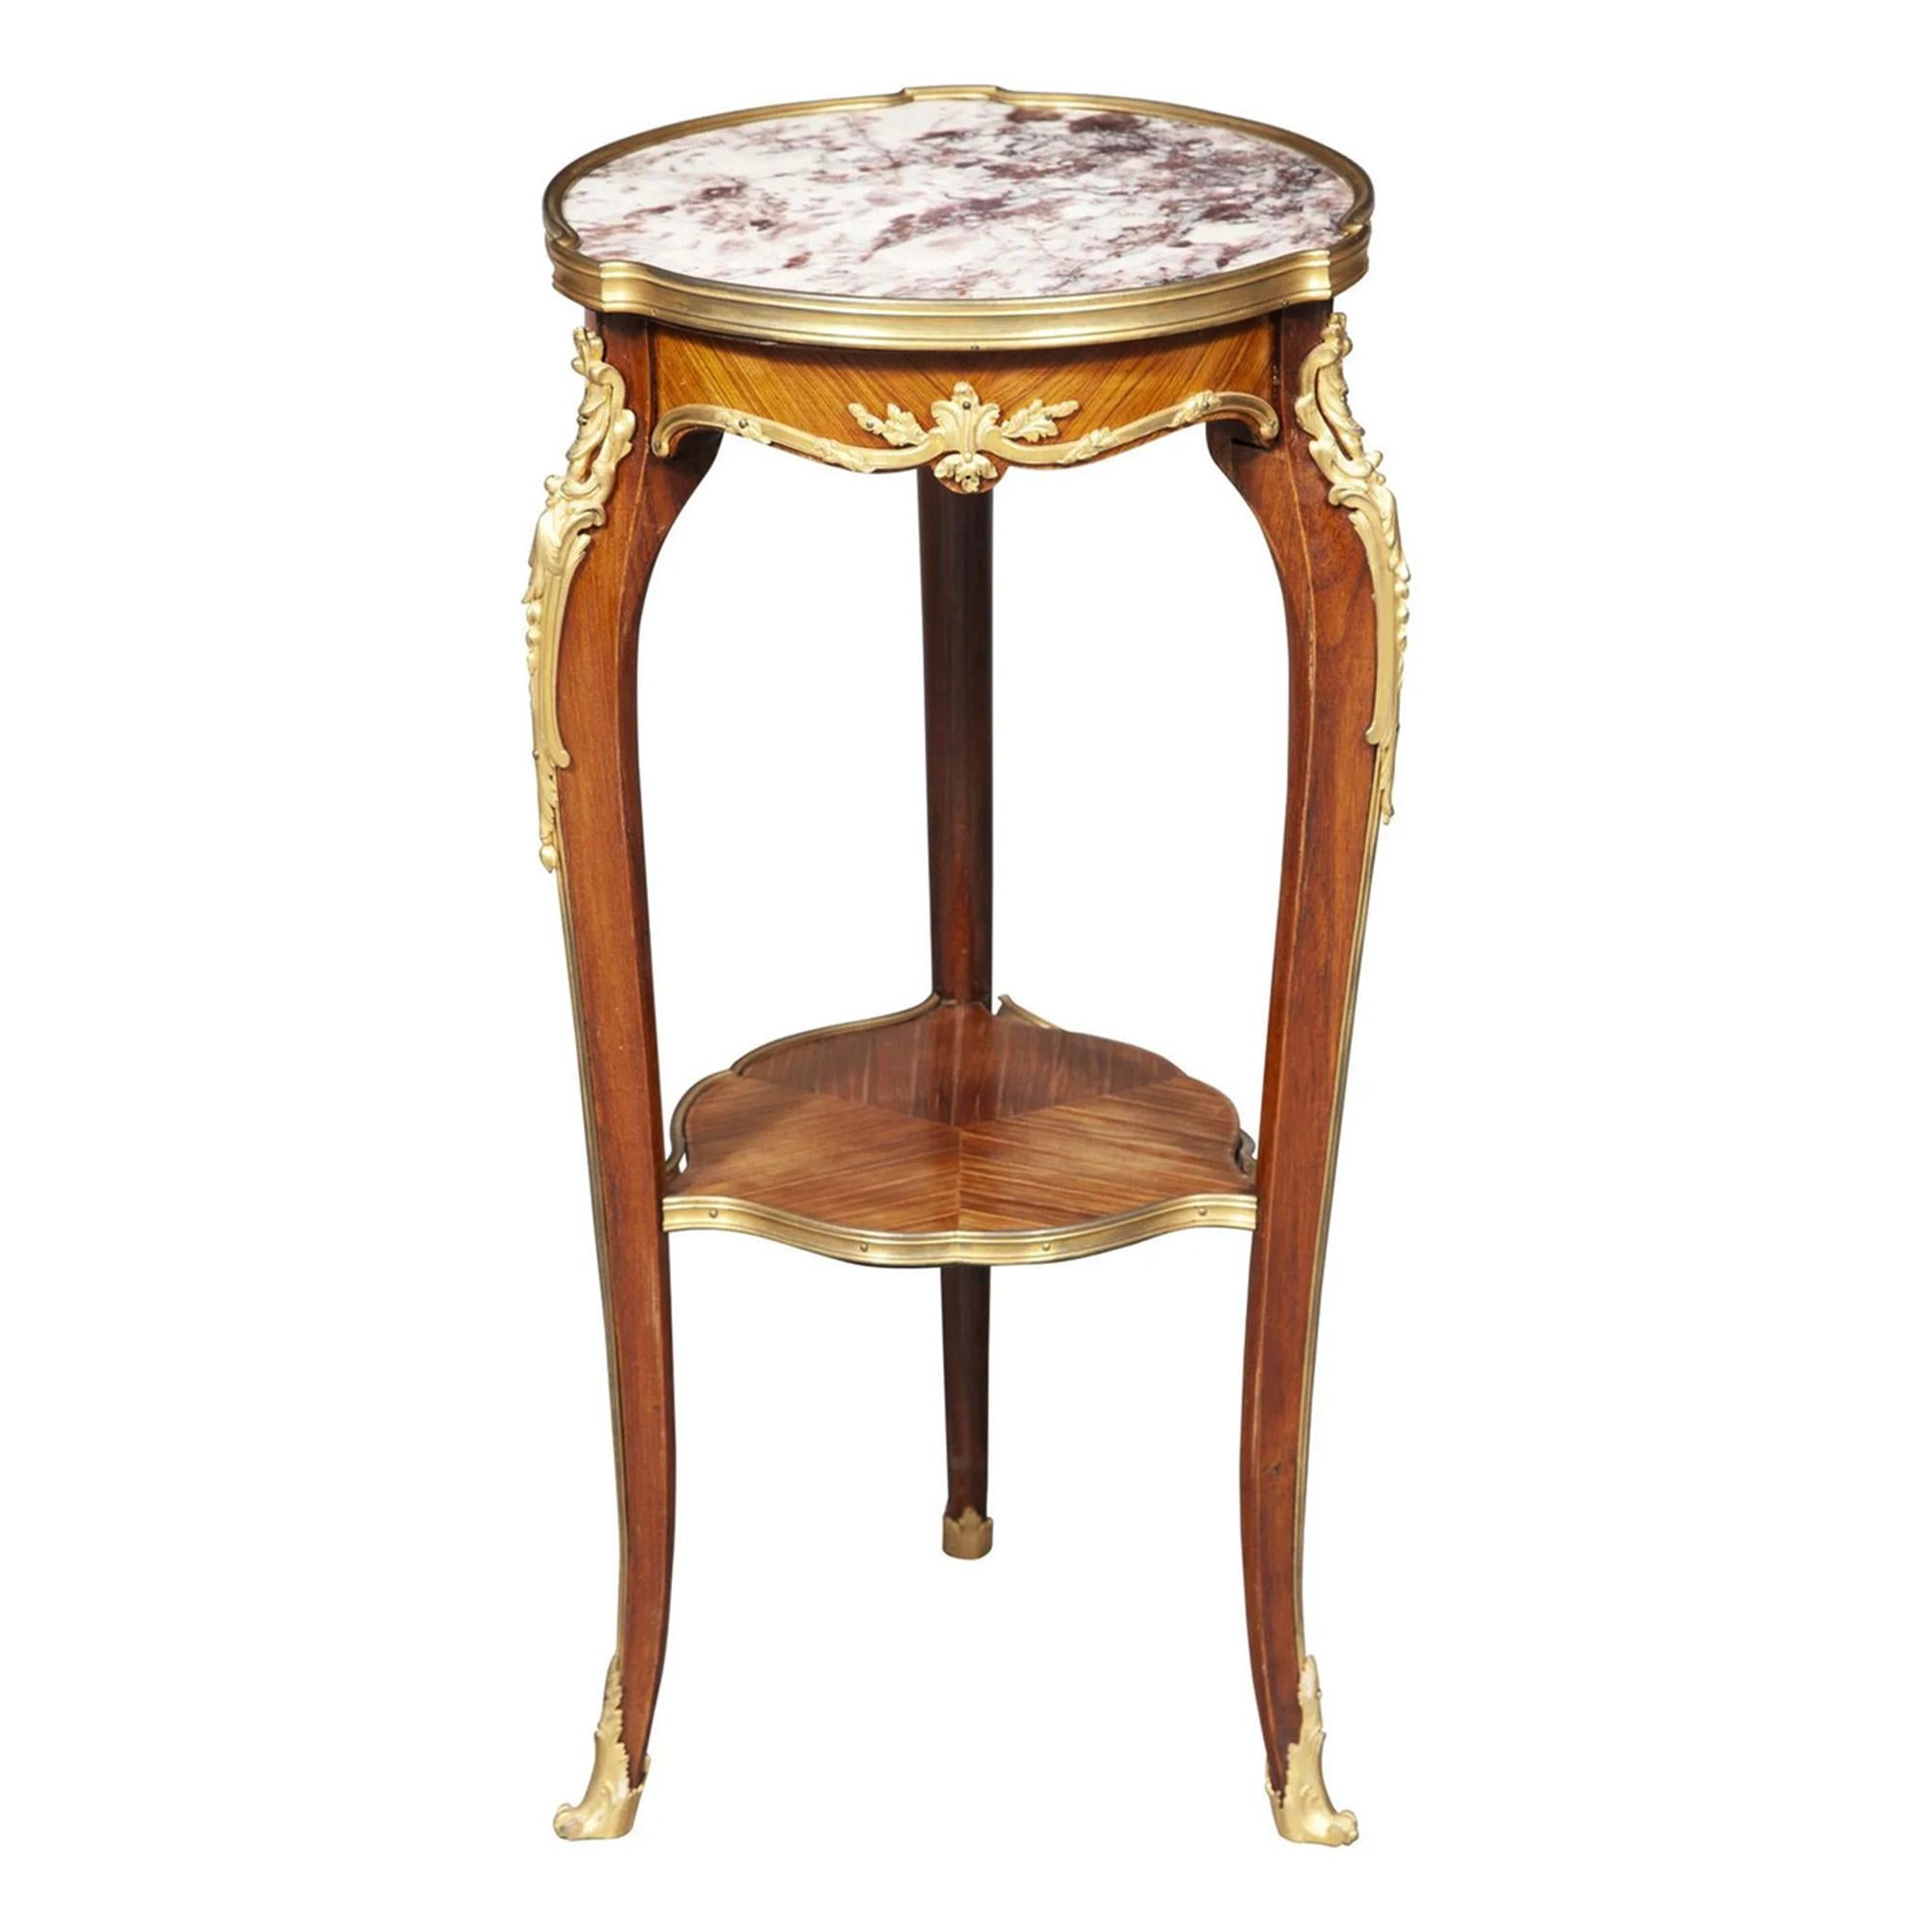 Table d'appoint de style Louis XV en bois de roi monté sur bronze doré

Né à Herdon, en Allemagne, en 1849, Joseph Emmanuel Zwiener s'inscrit dans la tradition de certains des meilleurs ébnistes du XIXe siècle. Il s'installe à Paris et crée un